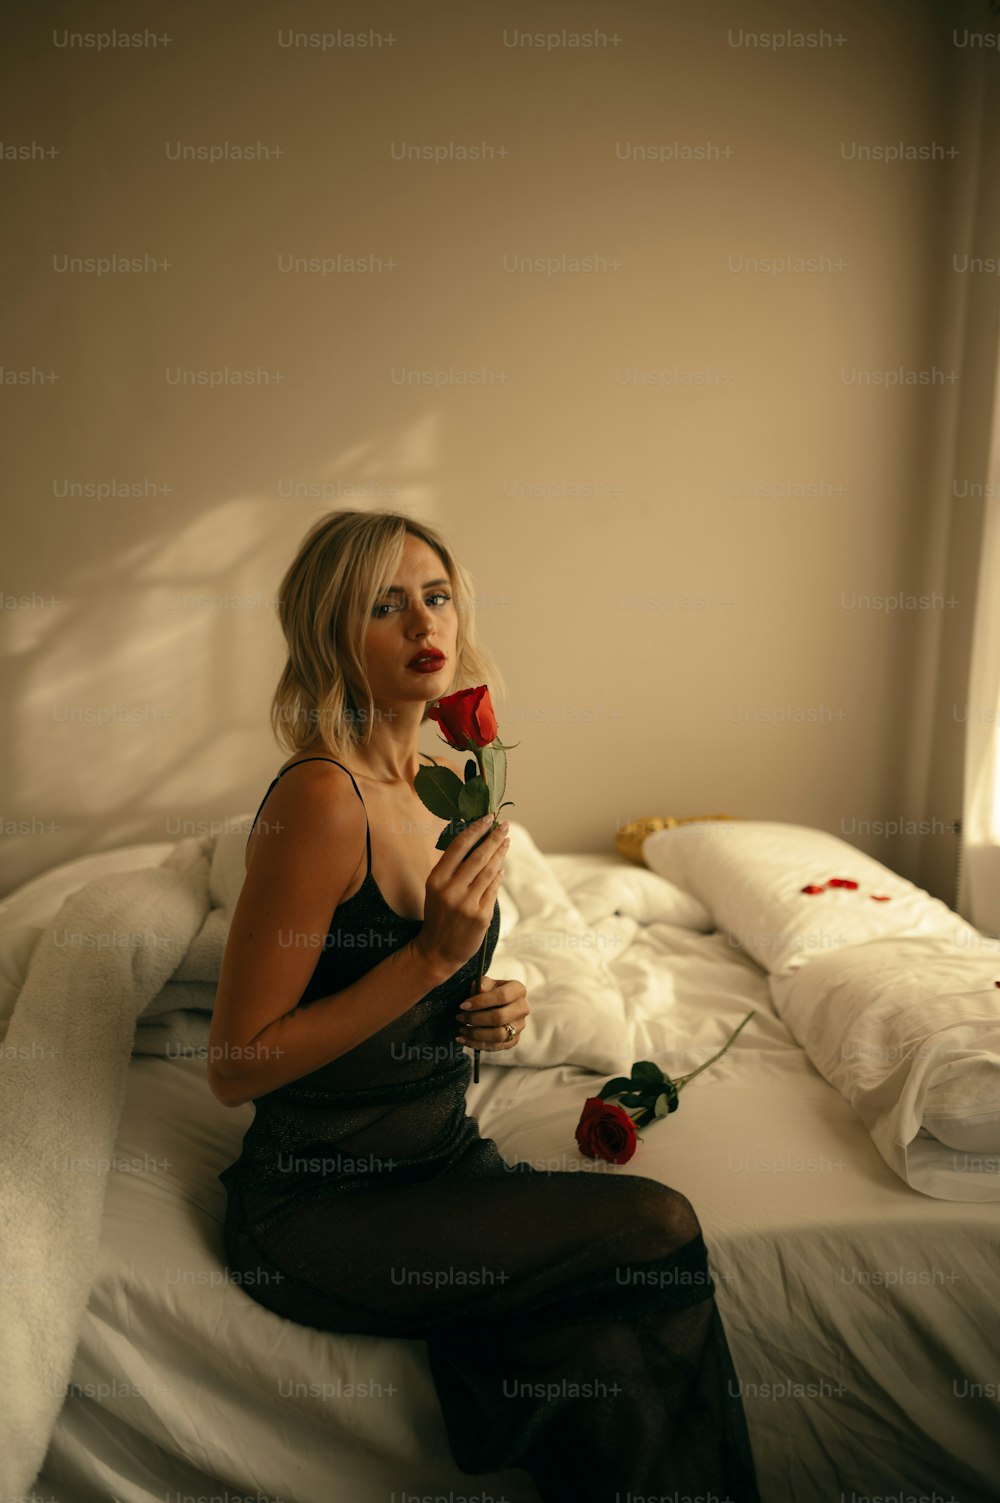 Una mujer sentada en una cama sosteniendo una rosa